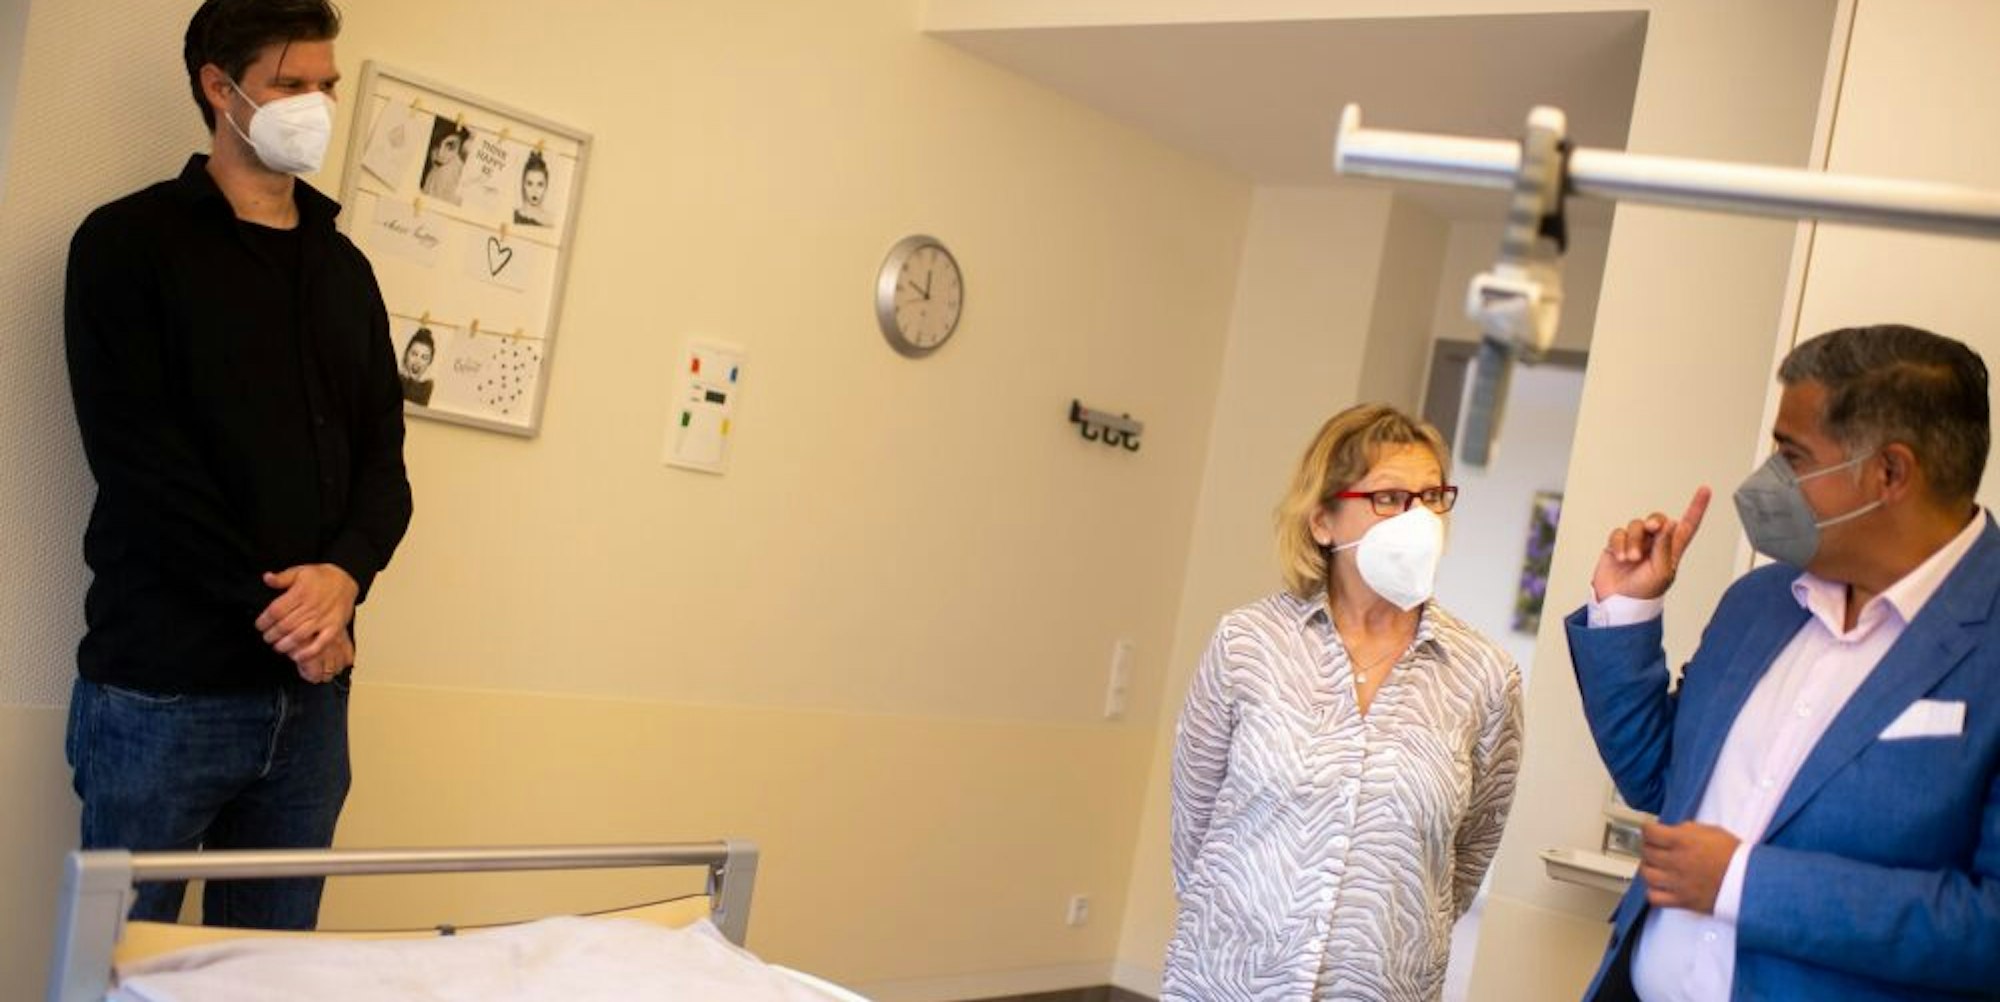 Zehn Hospiz-Zimmer gibt es übergangsweise im Marien-Hospital. Die ersten beiden sind bereits bezogen.